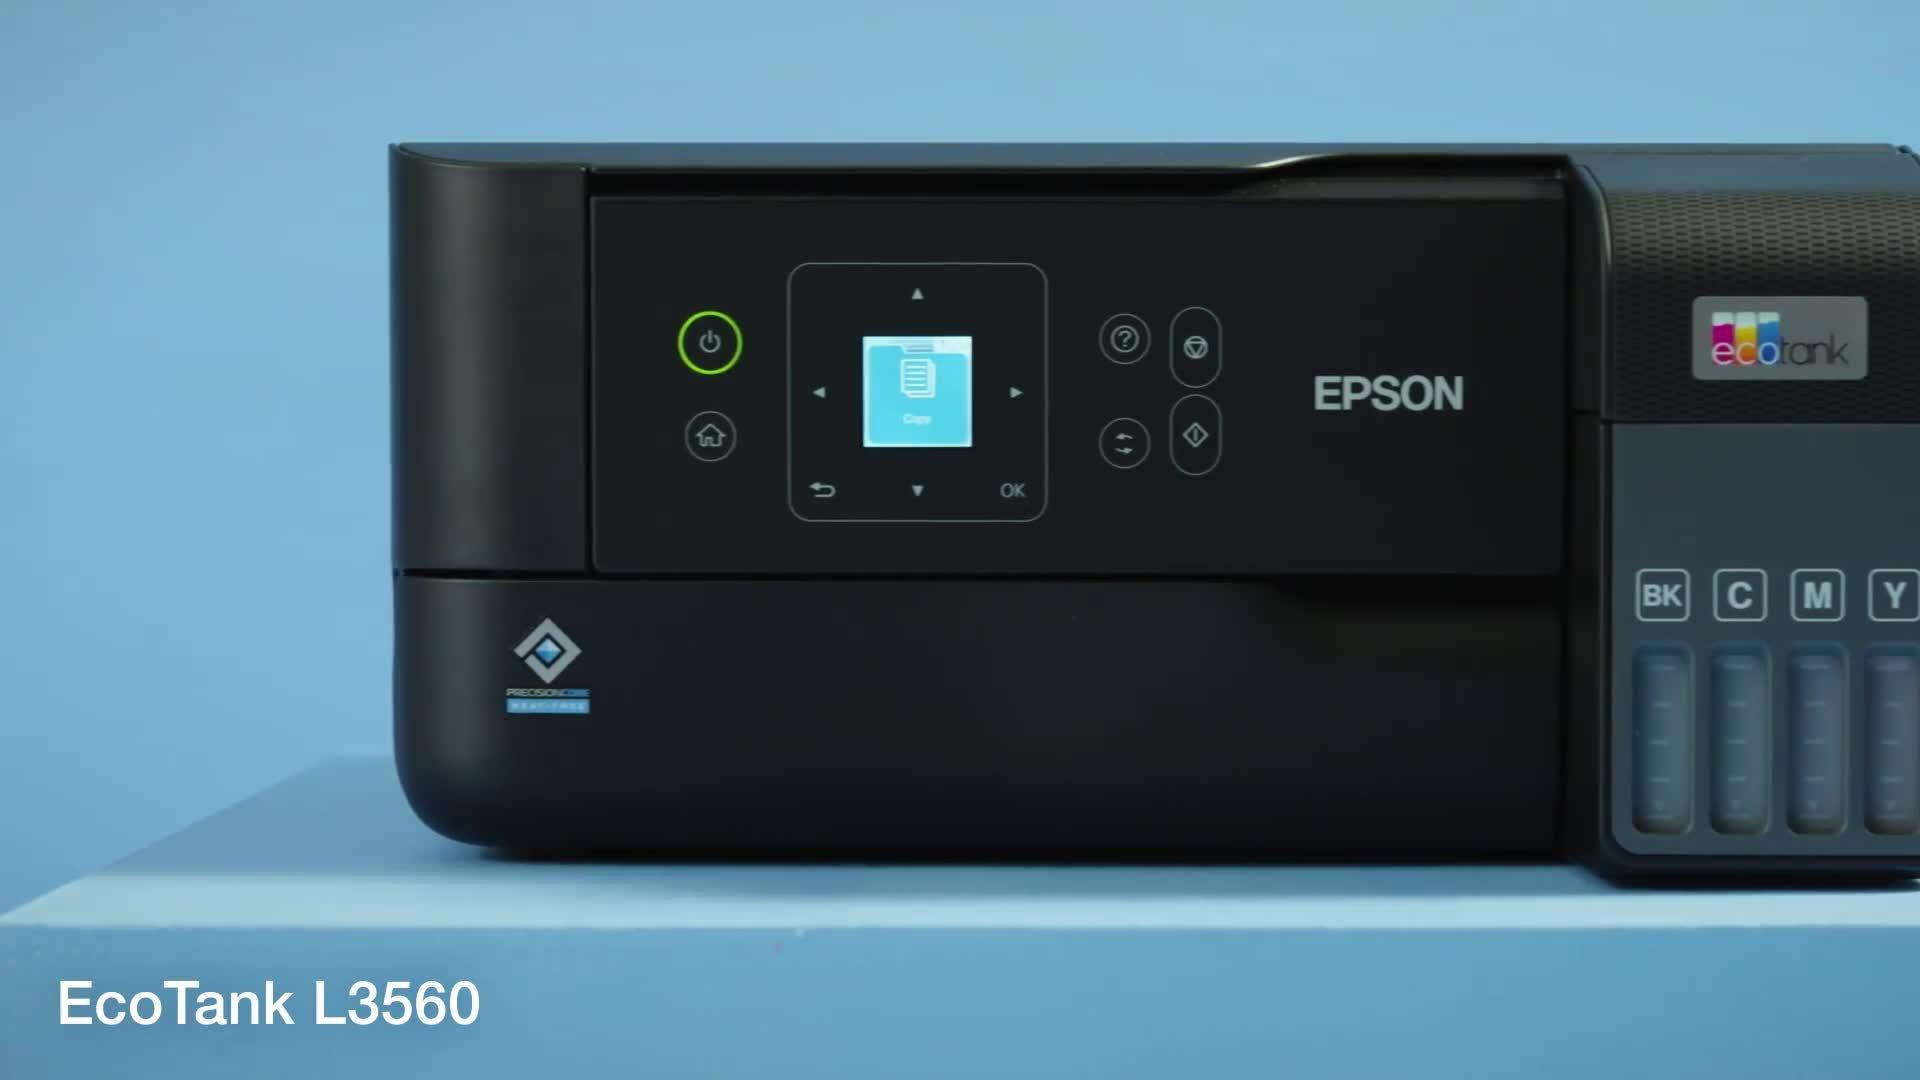 Impresora Multifuncional Epson EcoTank L3560 WiFi usb